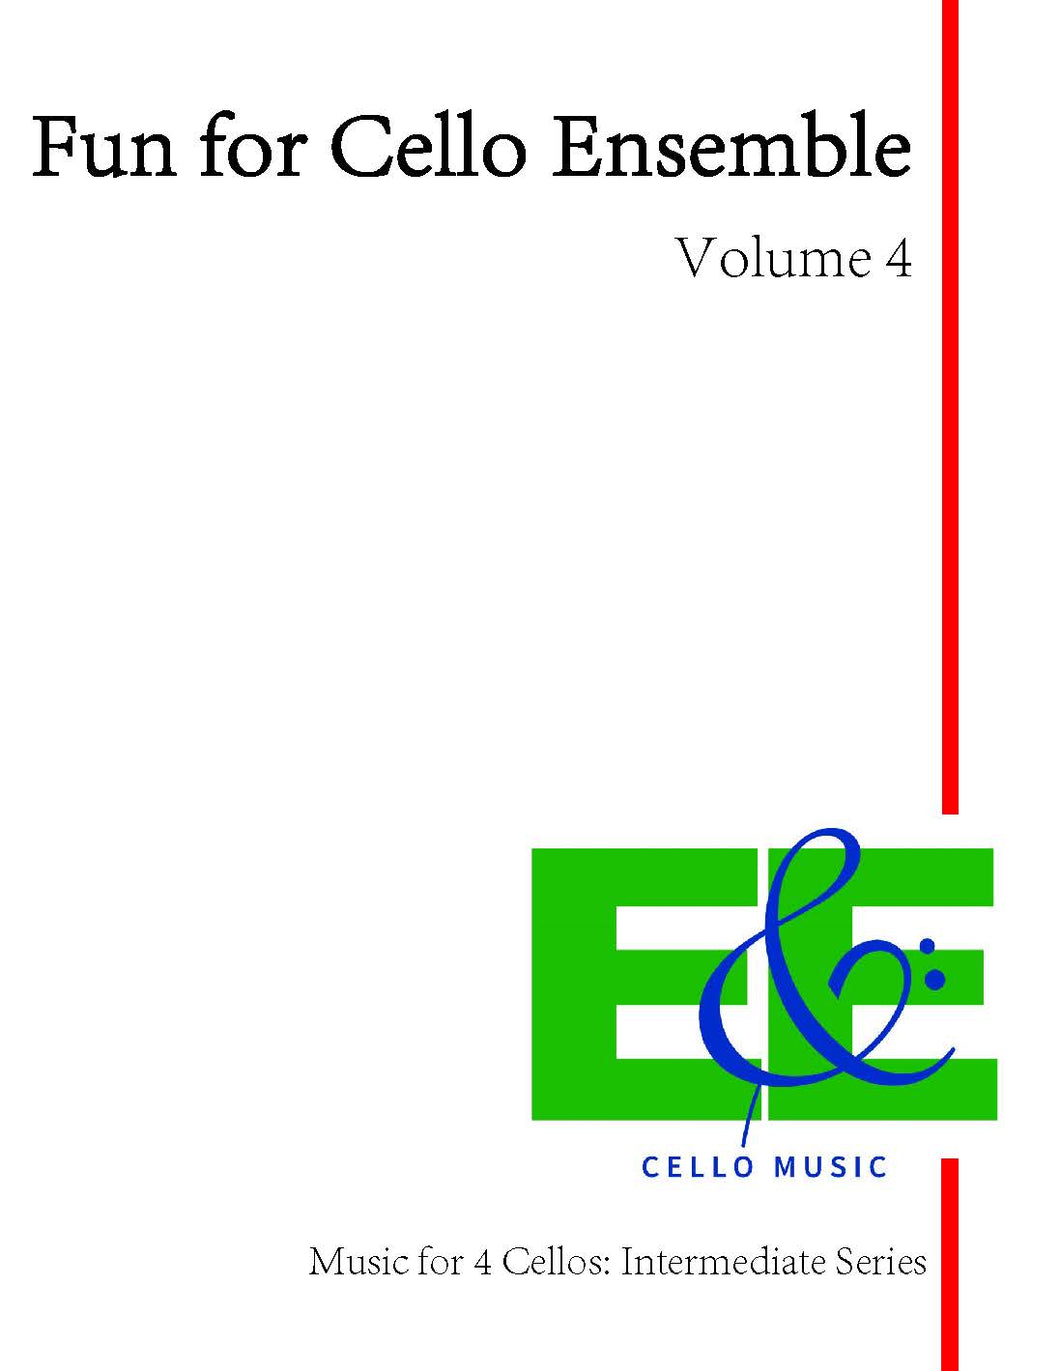 Fun for Cello Ensemble Vol. 4<br>Music for 4 Cellos:<br>Intermediate Series<br>*Digital Download